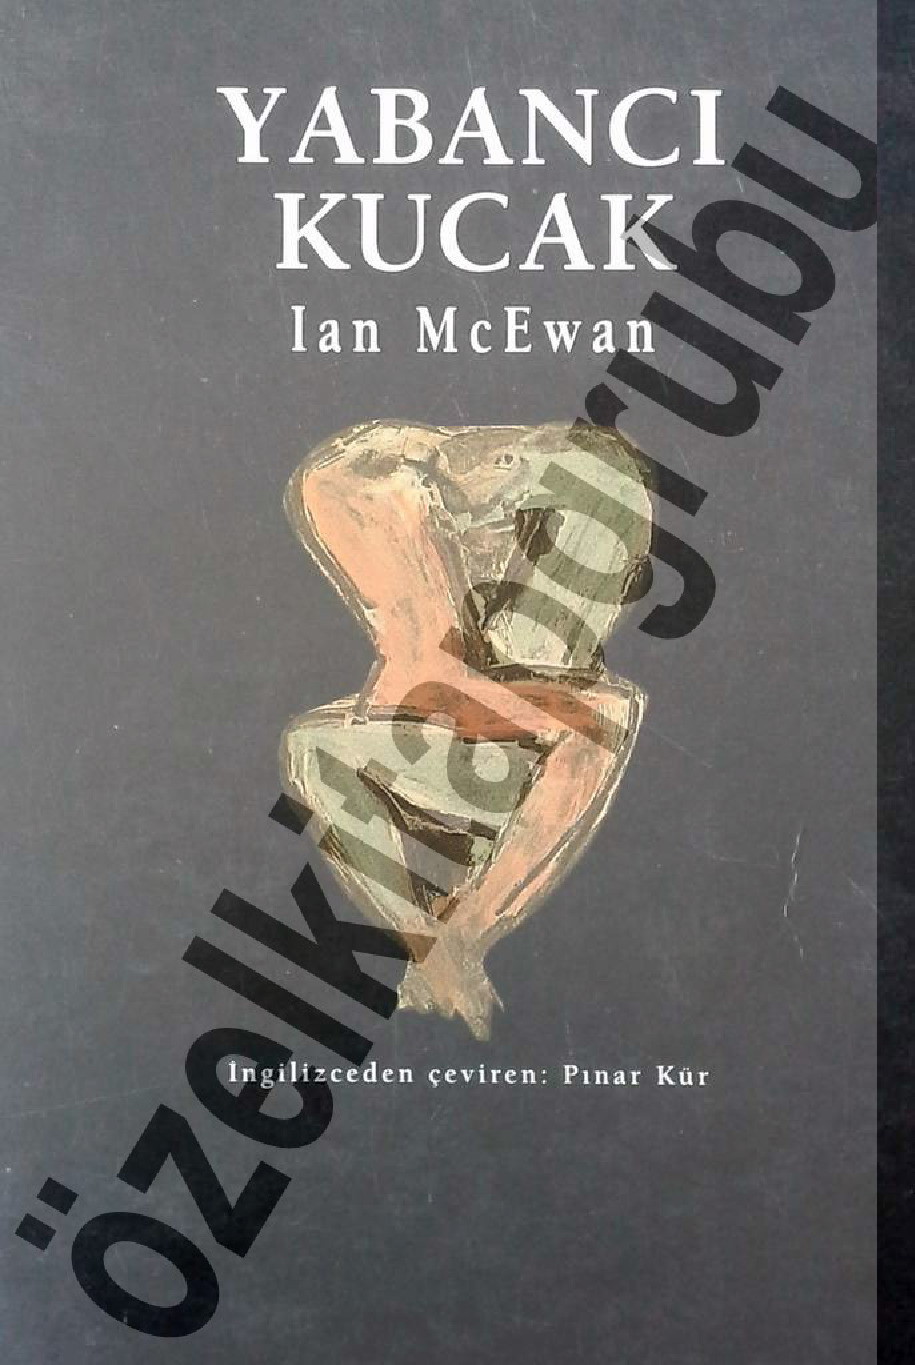 Yabancı Qucaq-Ian Mcewan-Pinar Kür-1991-288s